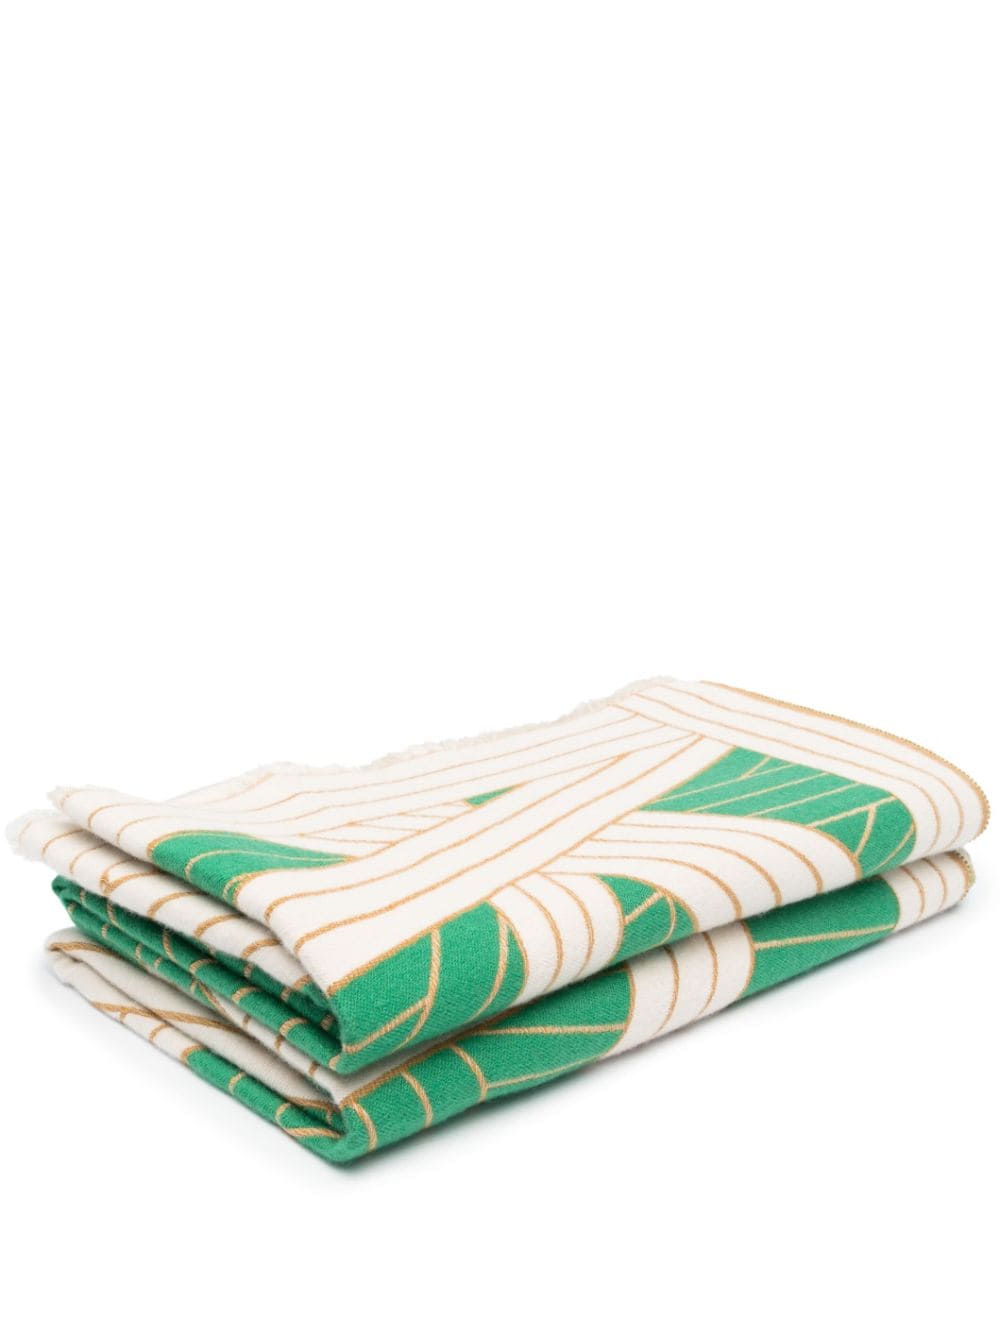 Missoni Nastri Frayed Blanket In Green